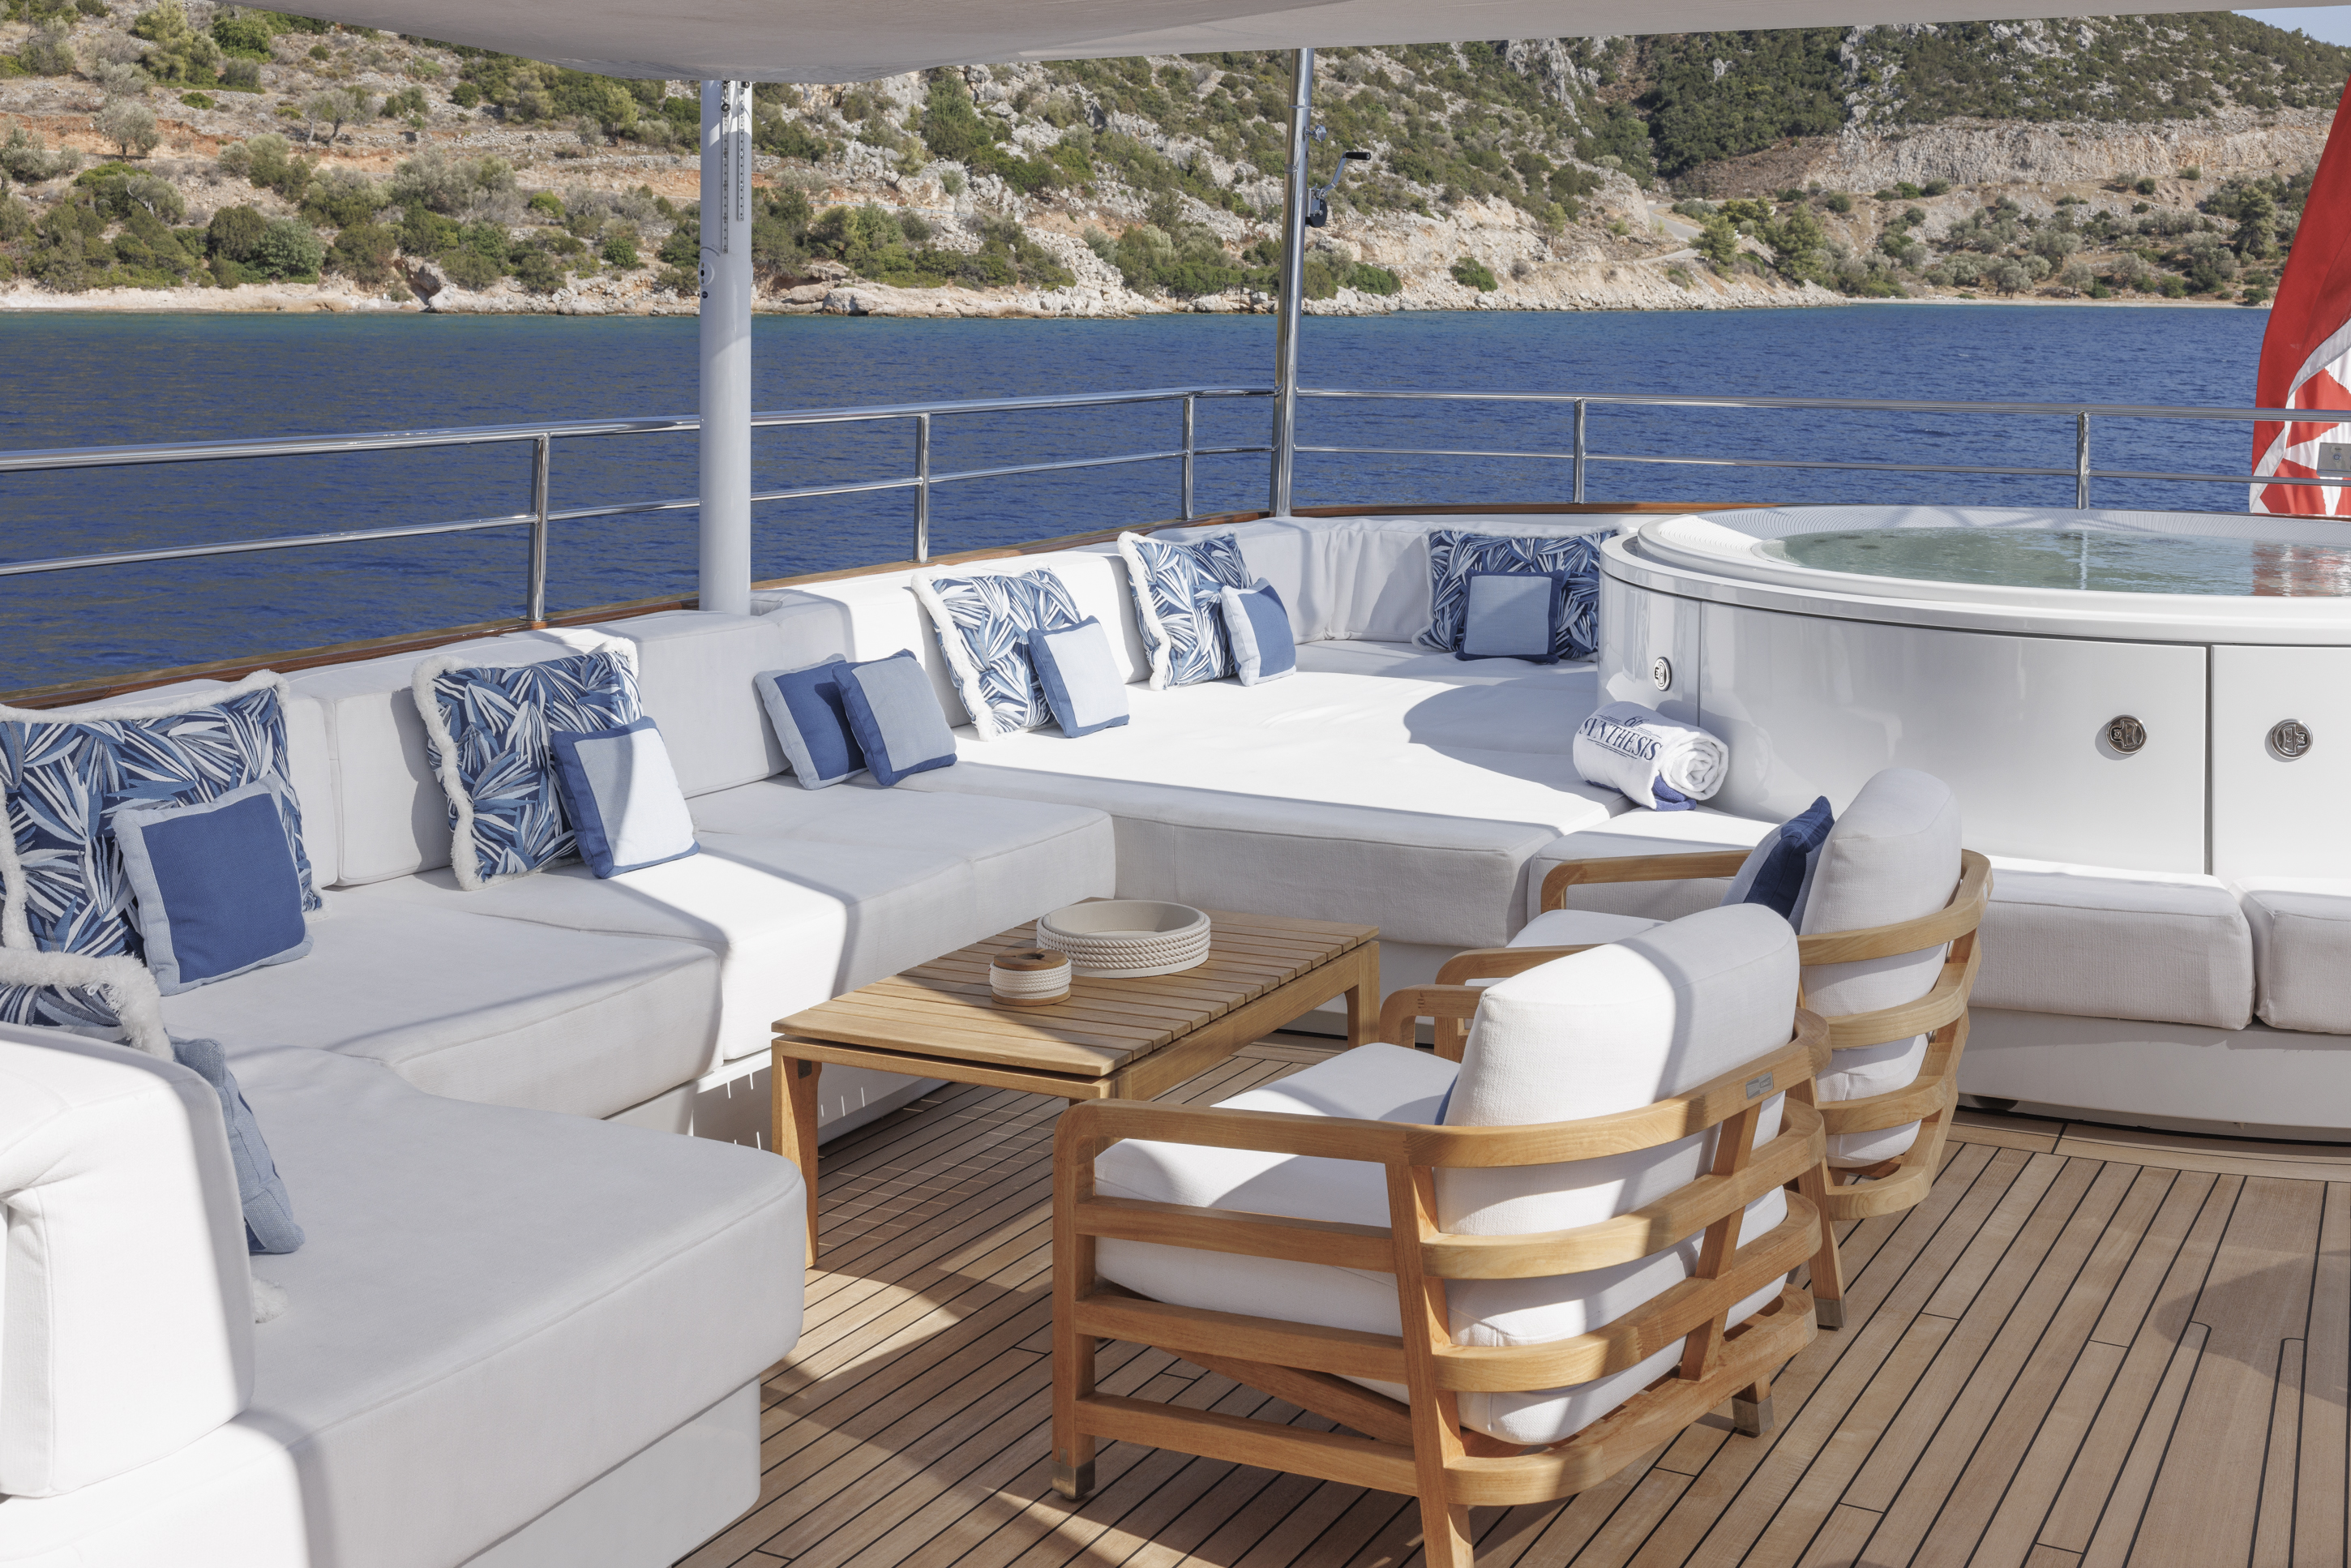 Beautiful deck furniture